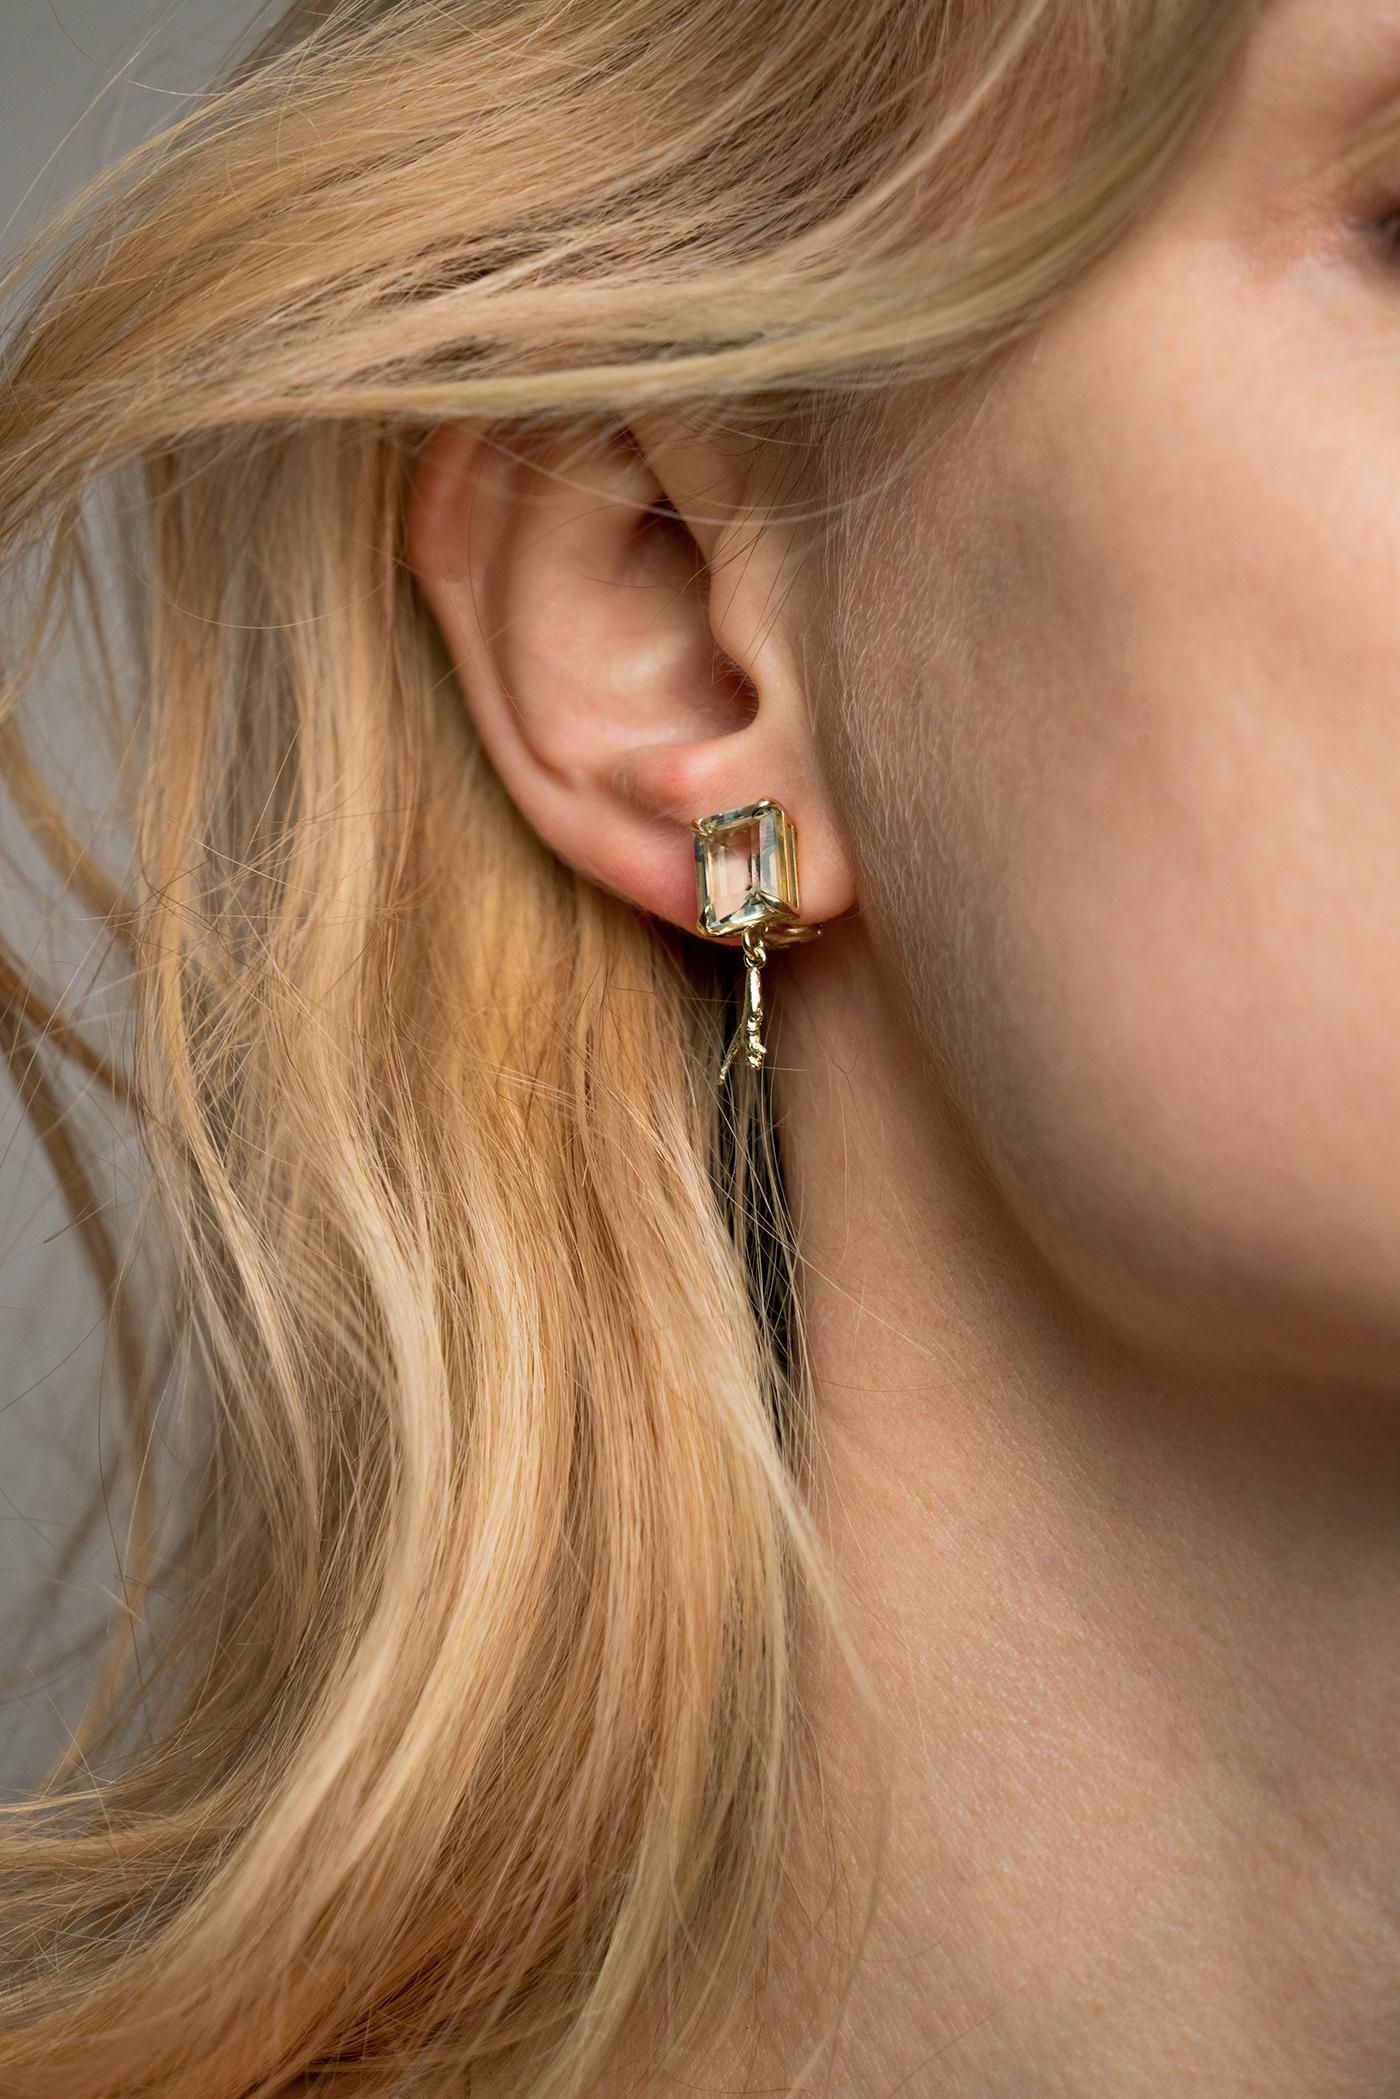 Ces boucles d'oreilles contemporaines appartiennent à la collection Tea, qui a été présentée dans le numéro publié par Vogue UA. Ces boucles d'oreilles sont en or jaune 18 carats et ont été conçues par la peintre à l'huile de Berlin, Polya